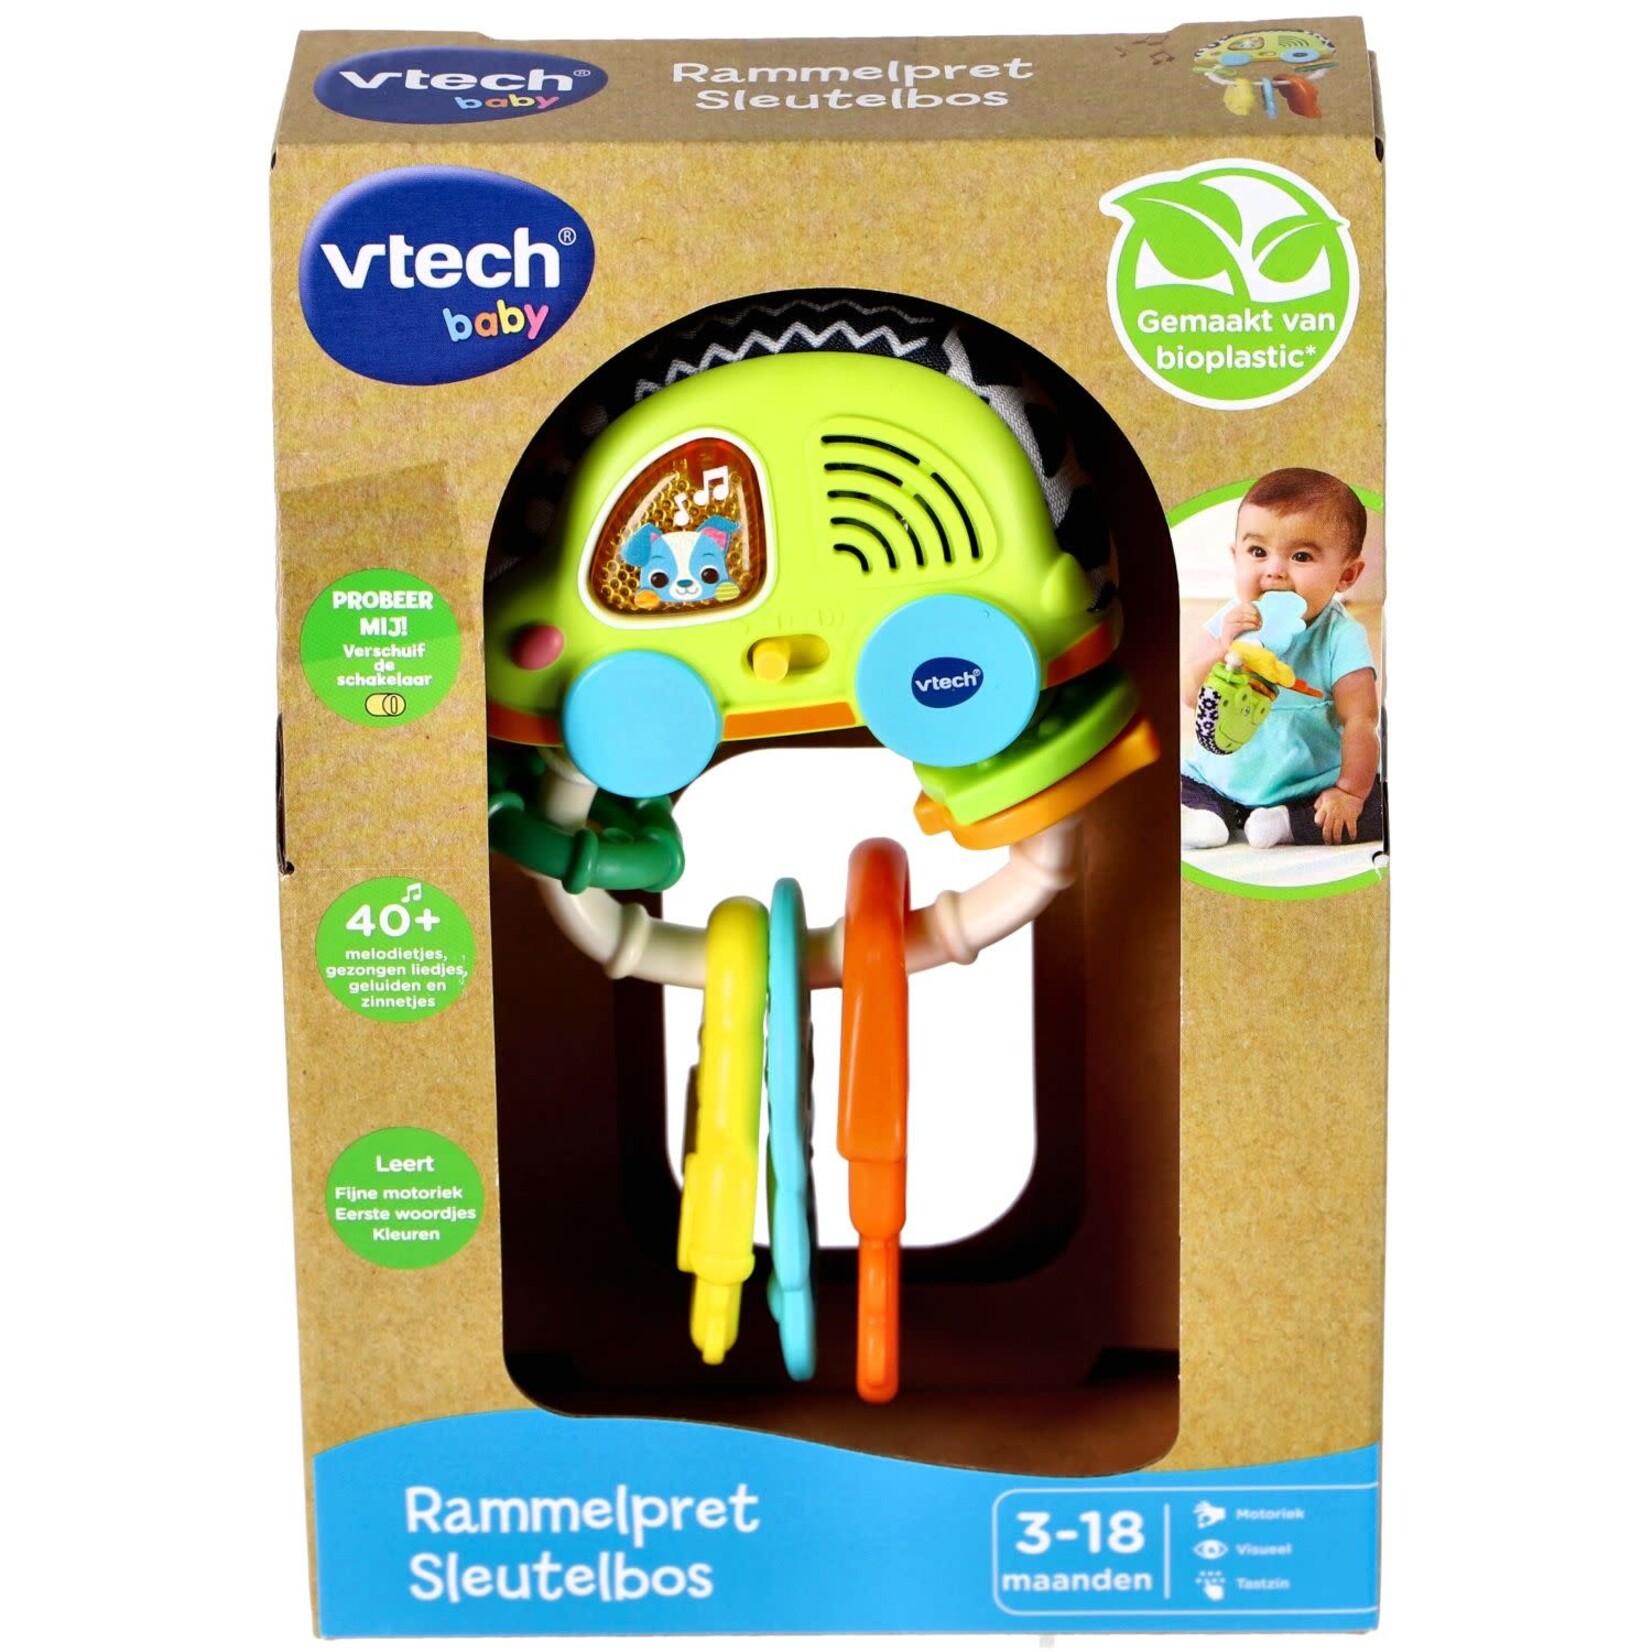 Vtech VTech Baby Rammelpret Sleutelbos